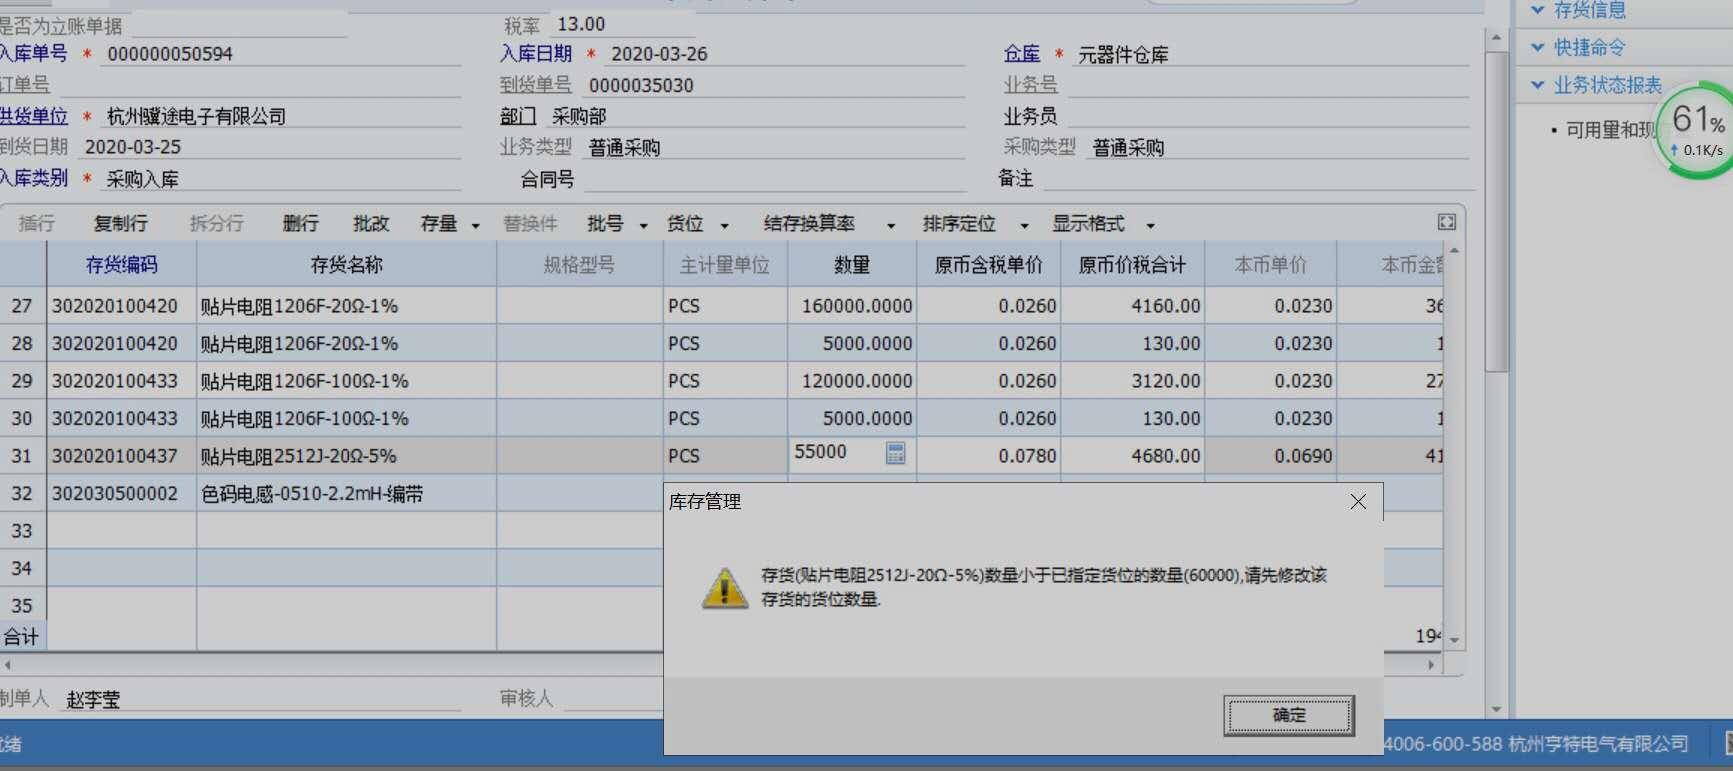 广州财务软件咨询有限公司 软件资讯 第1张